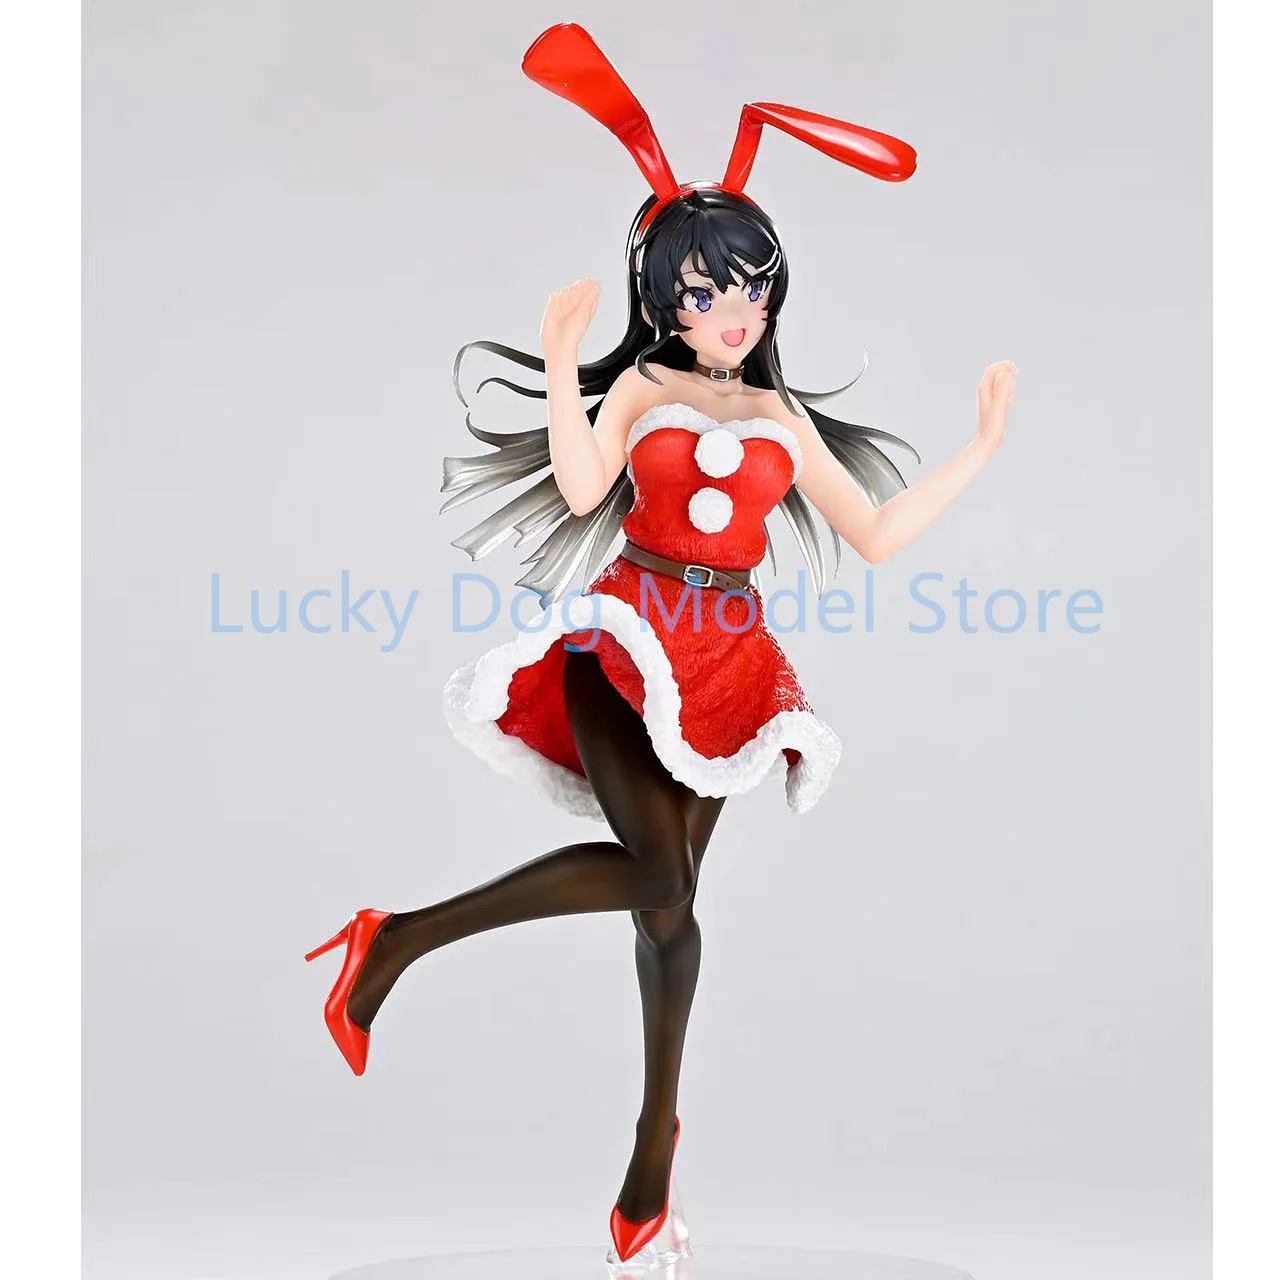 

TAITO Original Mai Sakurajima Рождество Зима красный кролик 18 см ПВХ экшн-модель детской игрушки фигурка Коллекционная кукла